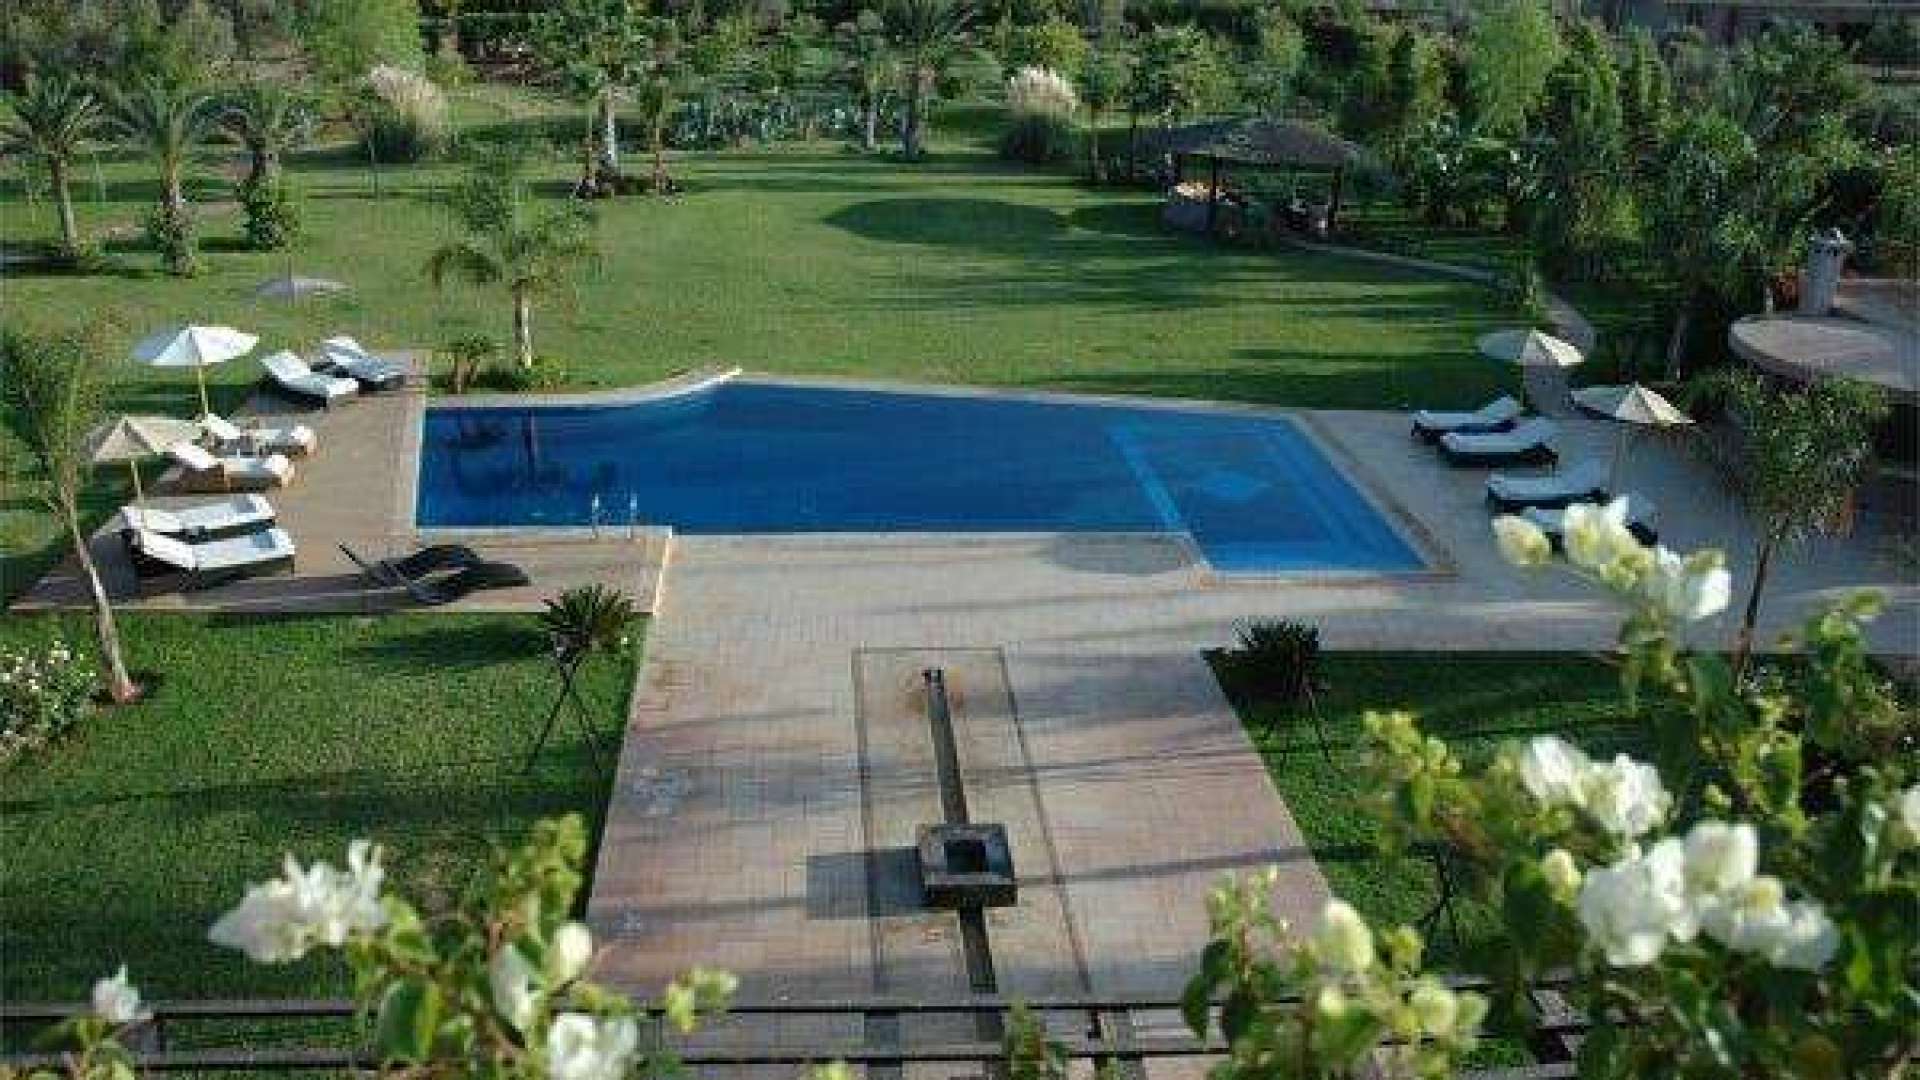 Location de vacances,Villa,Villa 6ch avec centre de bien-être et piscine privés à 20 min. du centre de Marrakech,Marrakech,Route de l'Ourika